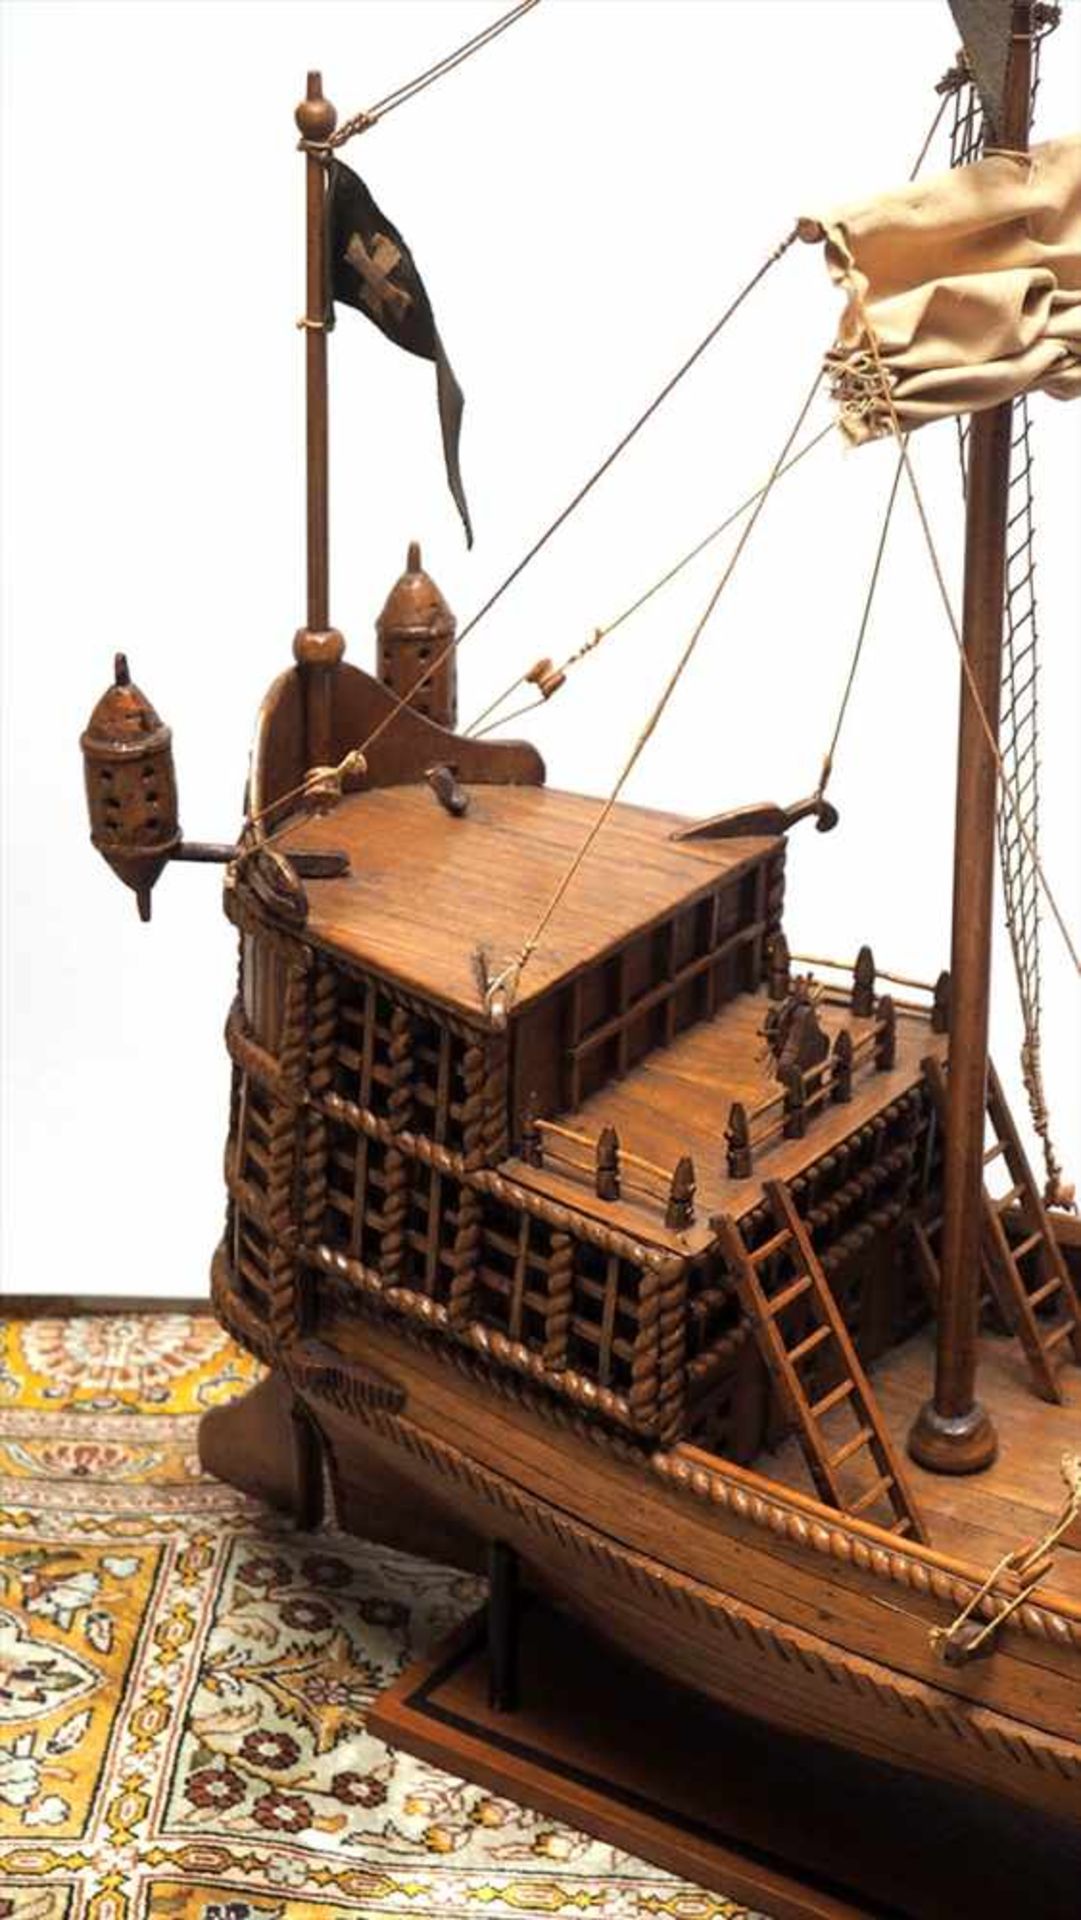 ModellschiffZweimastige Hansekogge mit hohem Heckaufbau und Hecklaternen. Holz, Segel aus Stoff. L. - Image 3 of 3